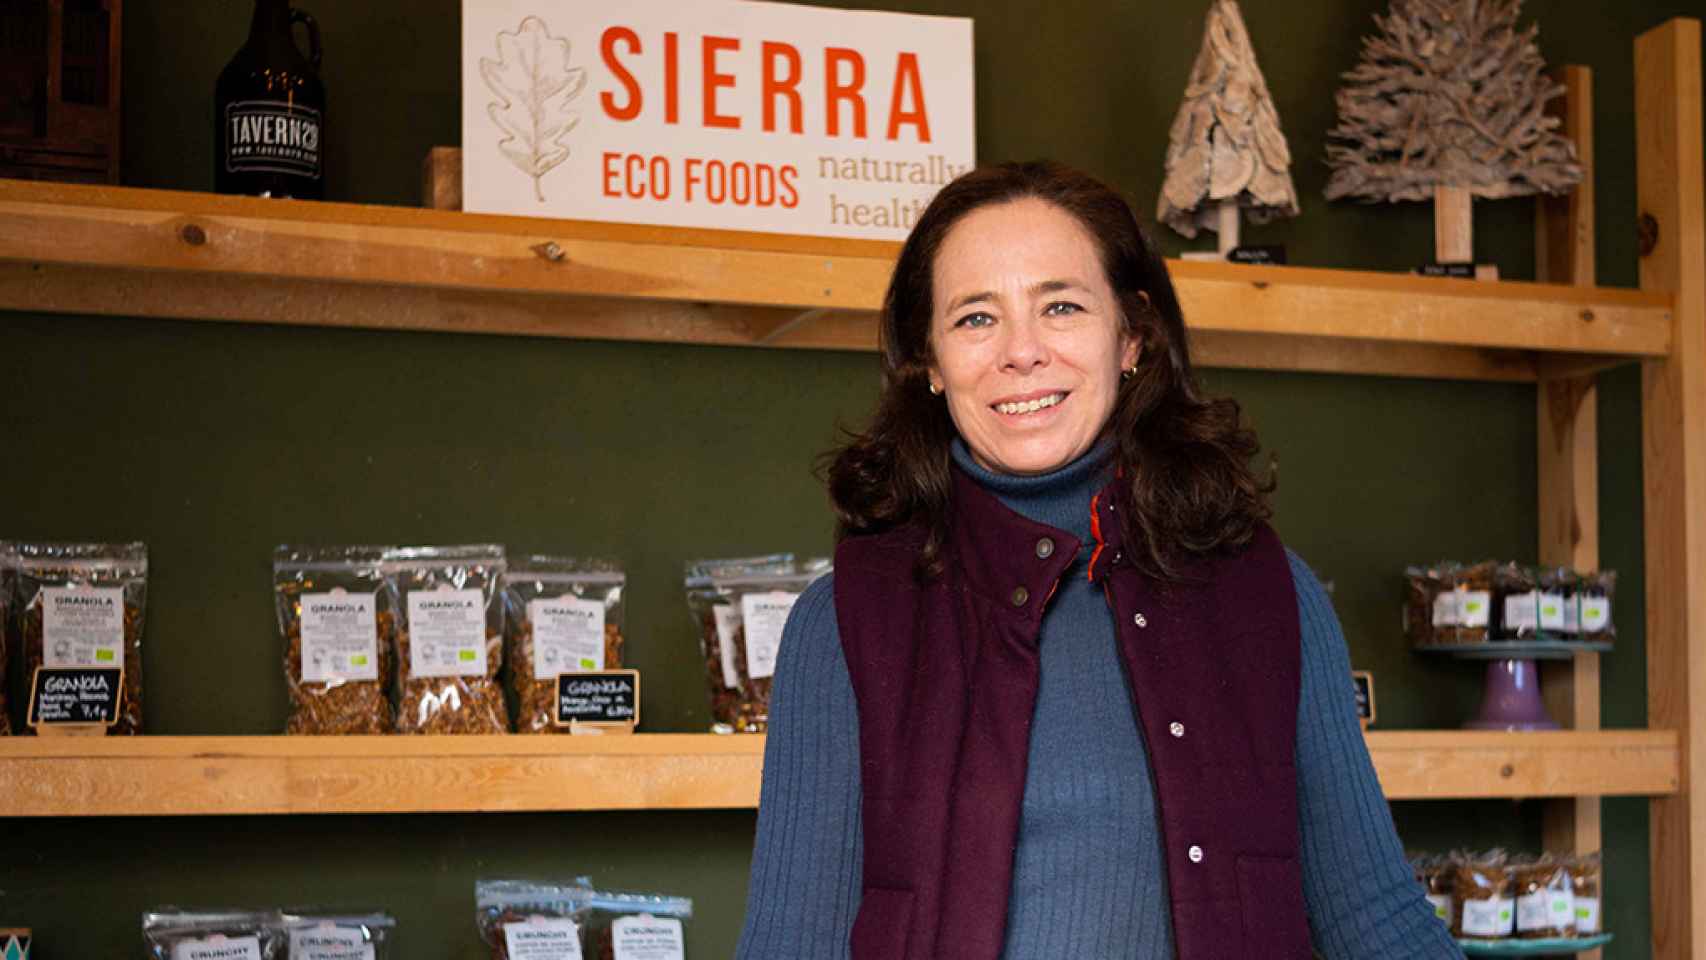 Patricia Vega abrió su negocio de alimentación natural Sierra Eco Foods con el apoyo de MicroBank / CAIXABANK